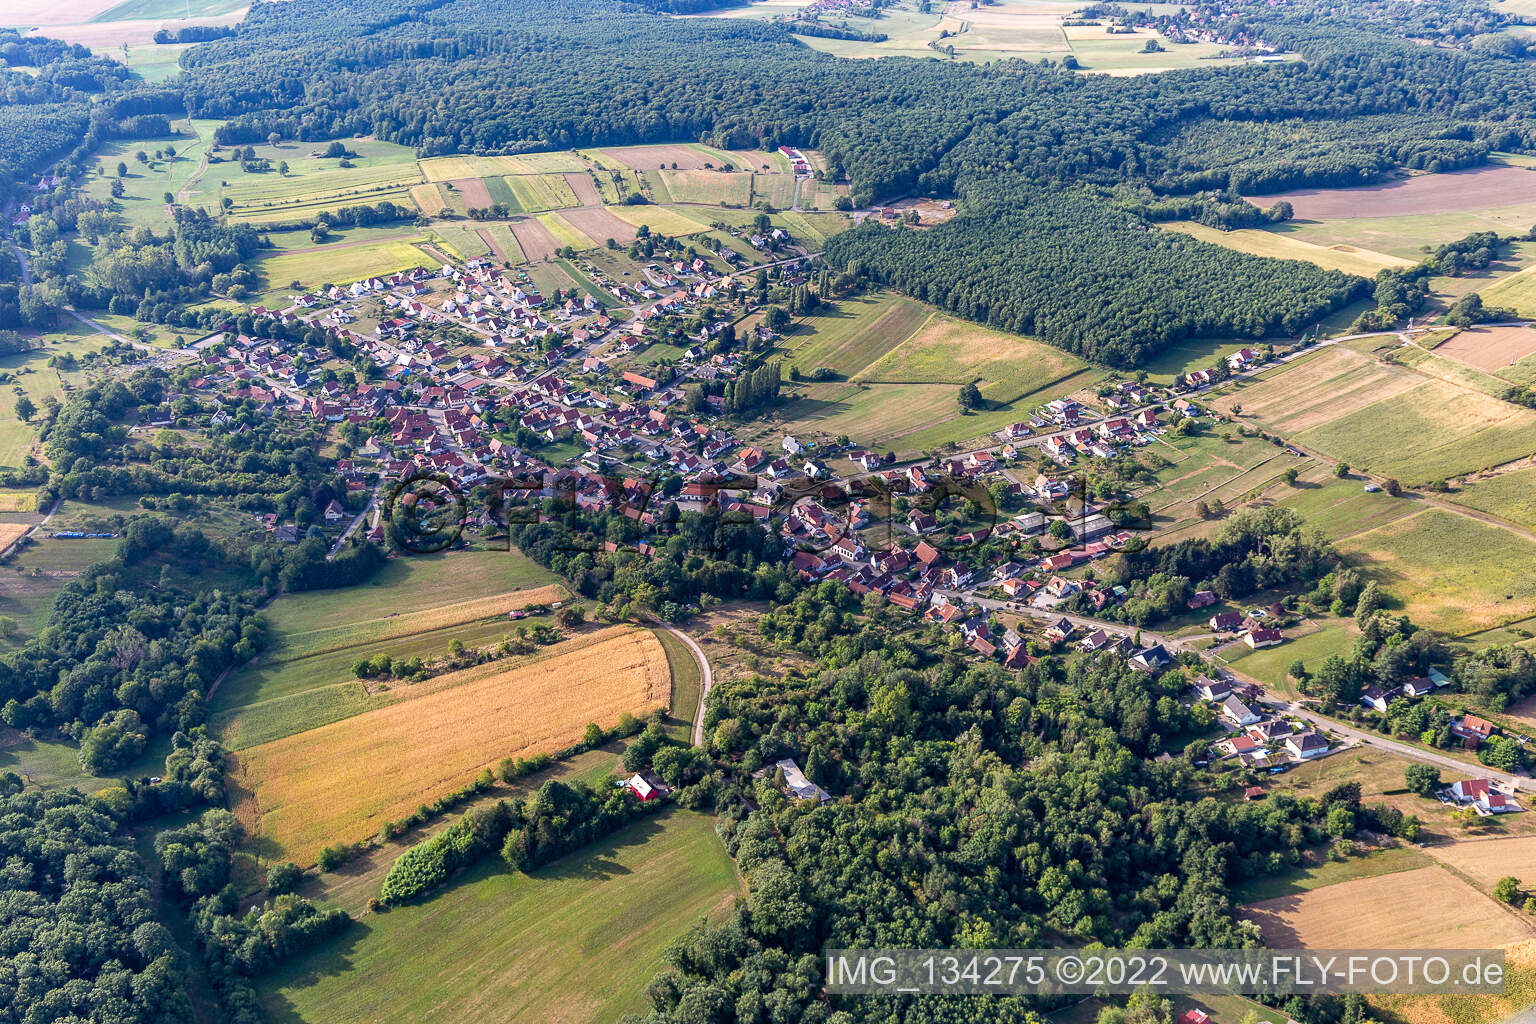 Lobsann in the state Bas-Rhin, France viewn from the air